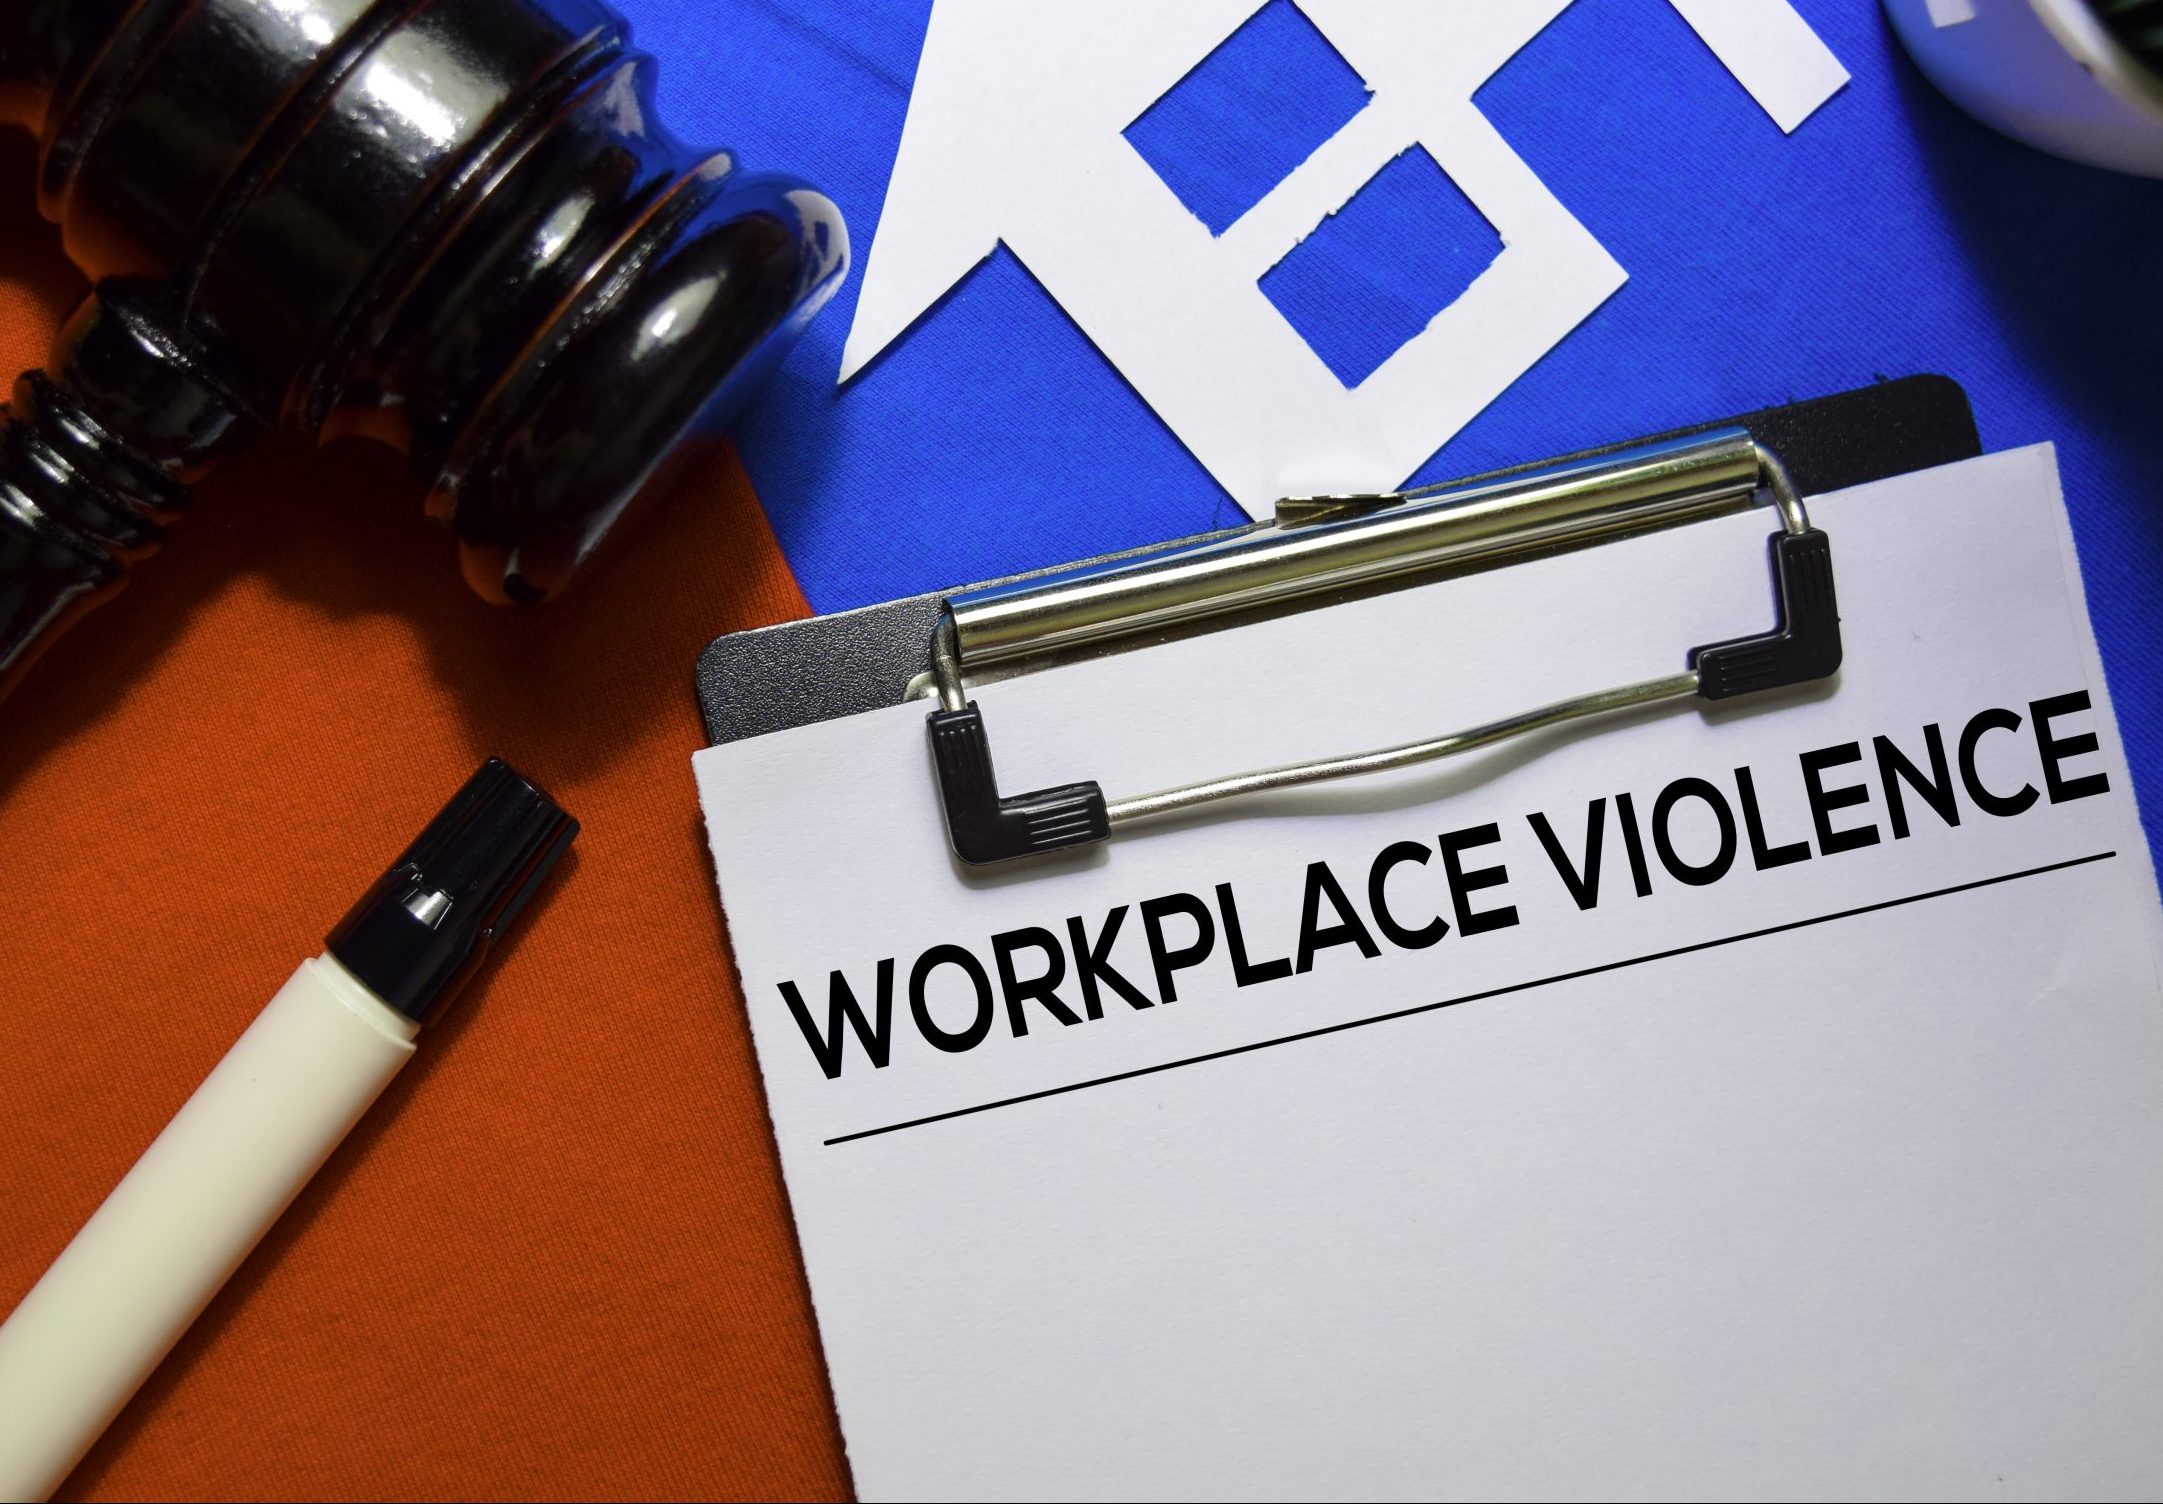 Etats-unis: le Suicide de lanceur d'alerte après le harcèlement moral au travail